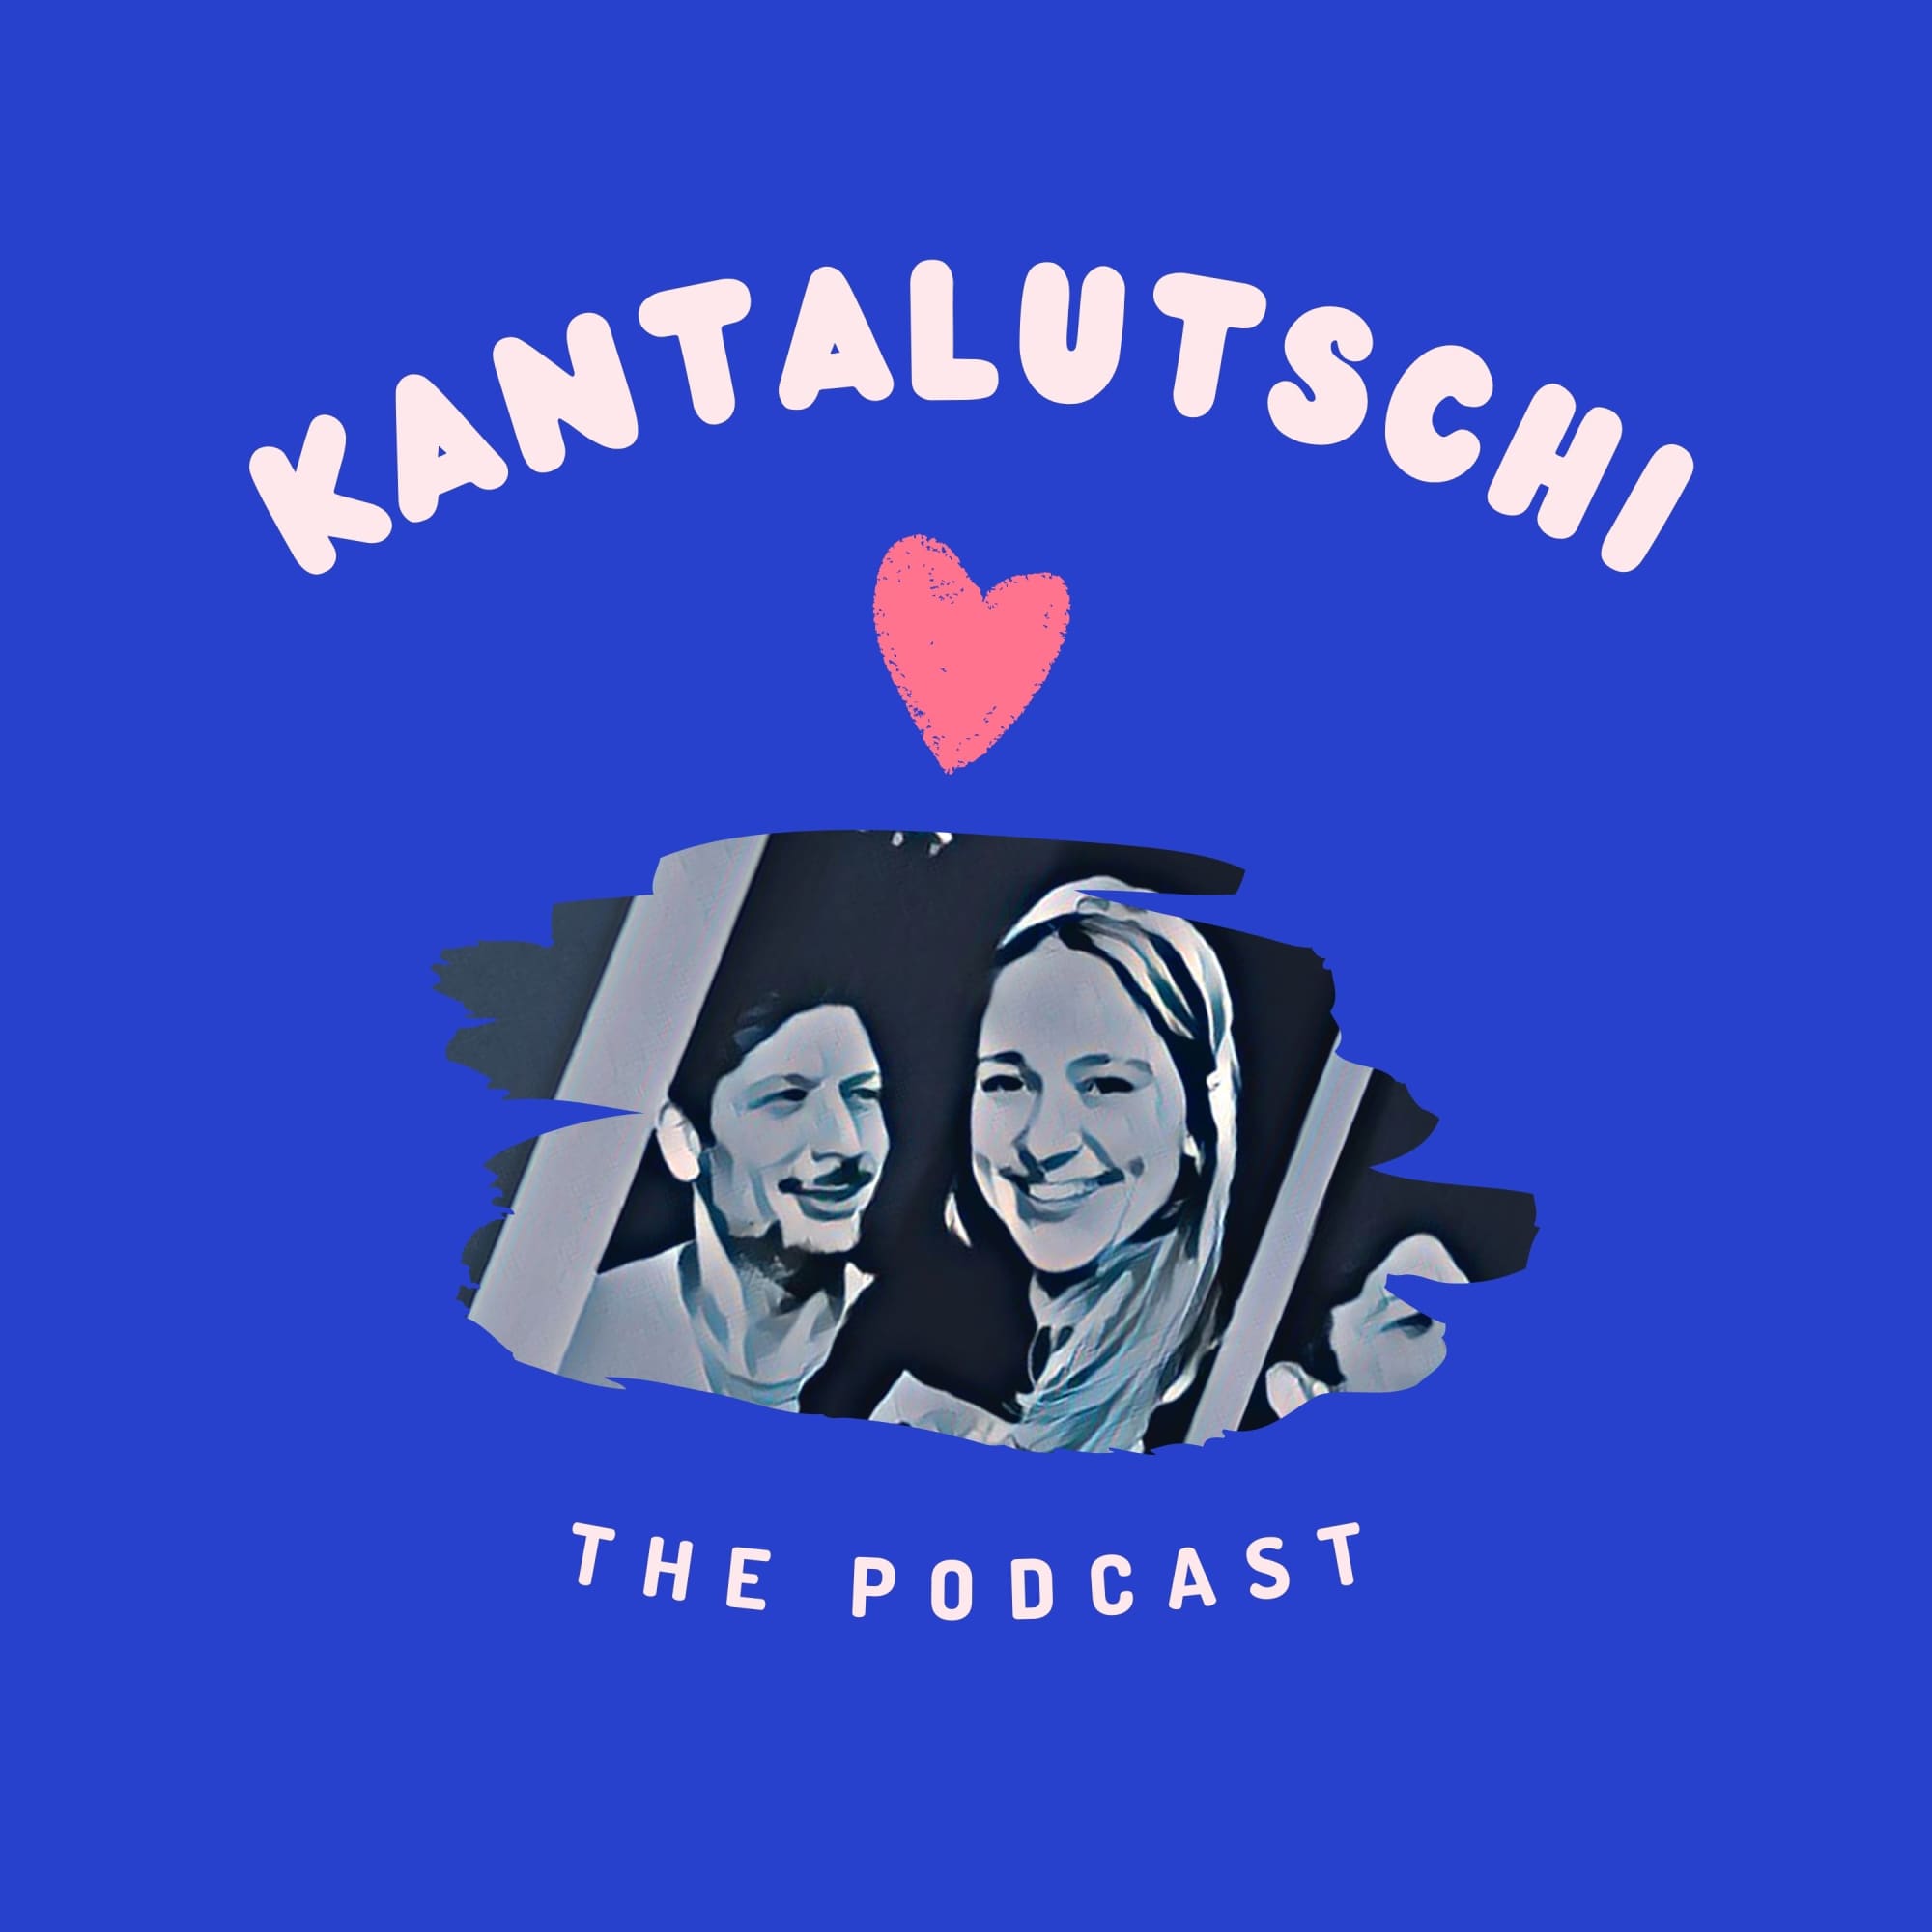 Kantalutschi Podcast Artwork